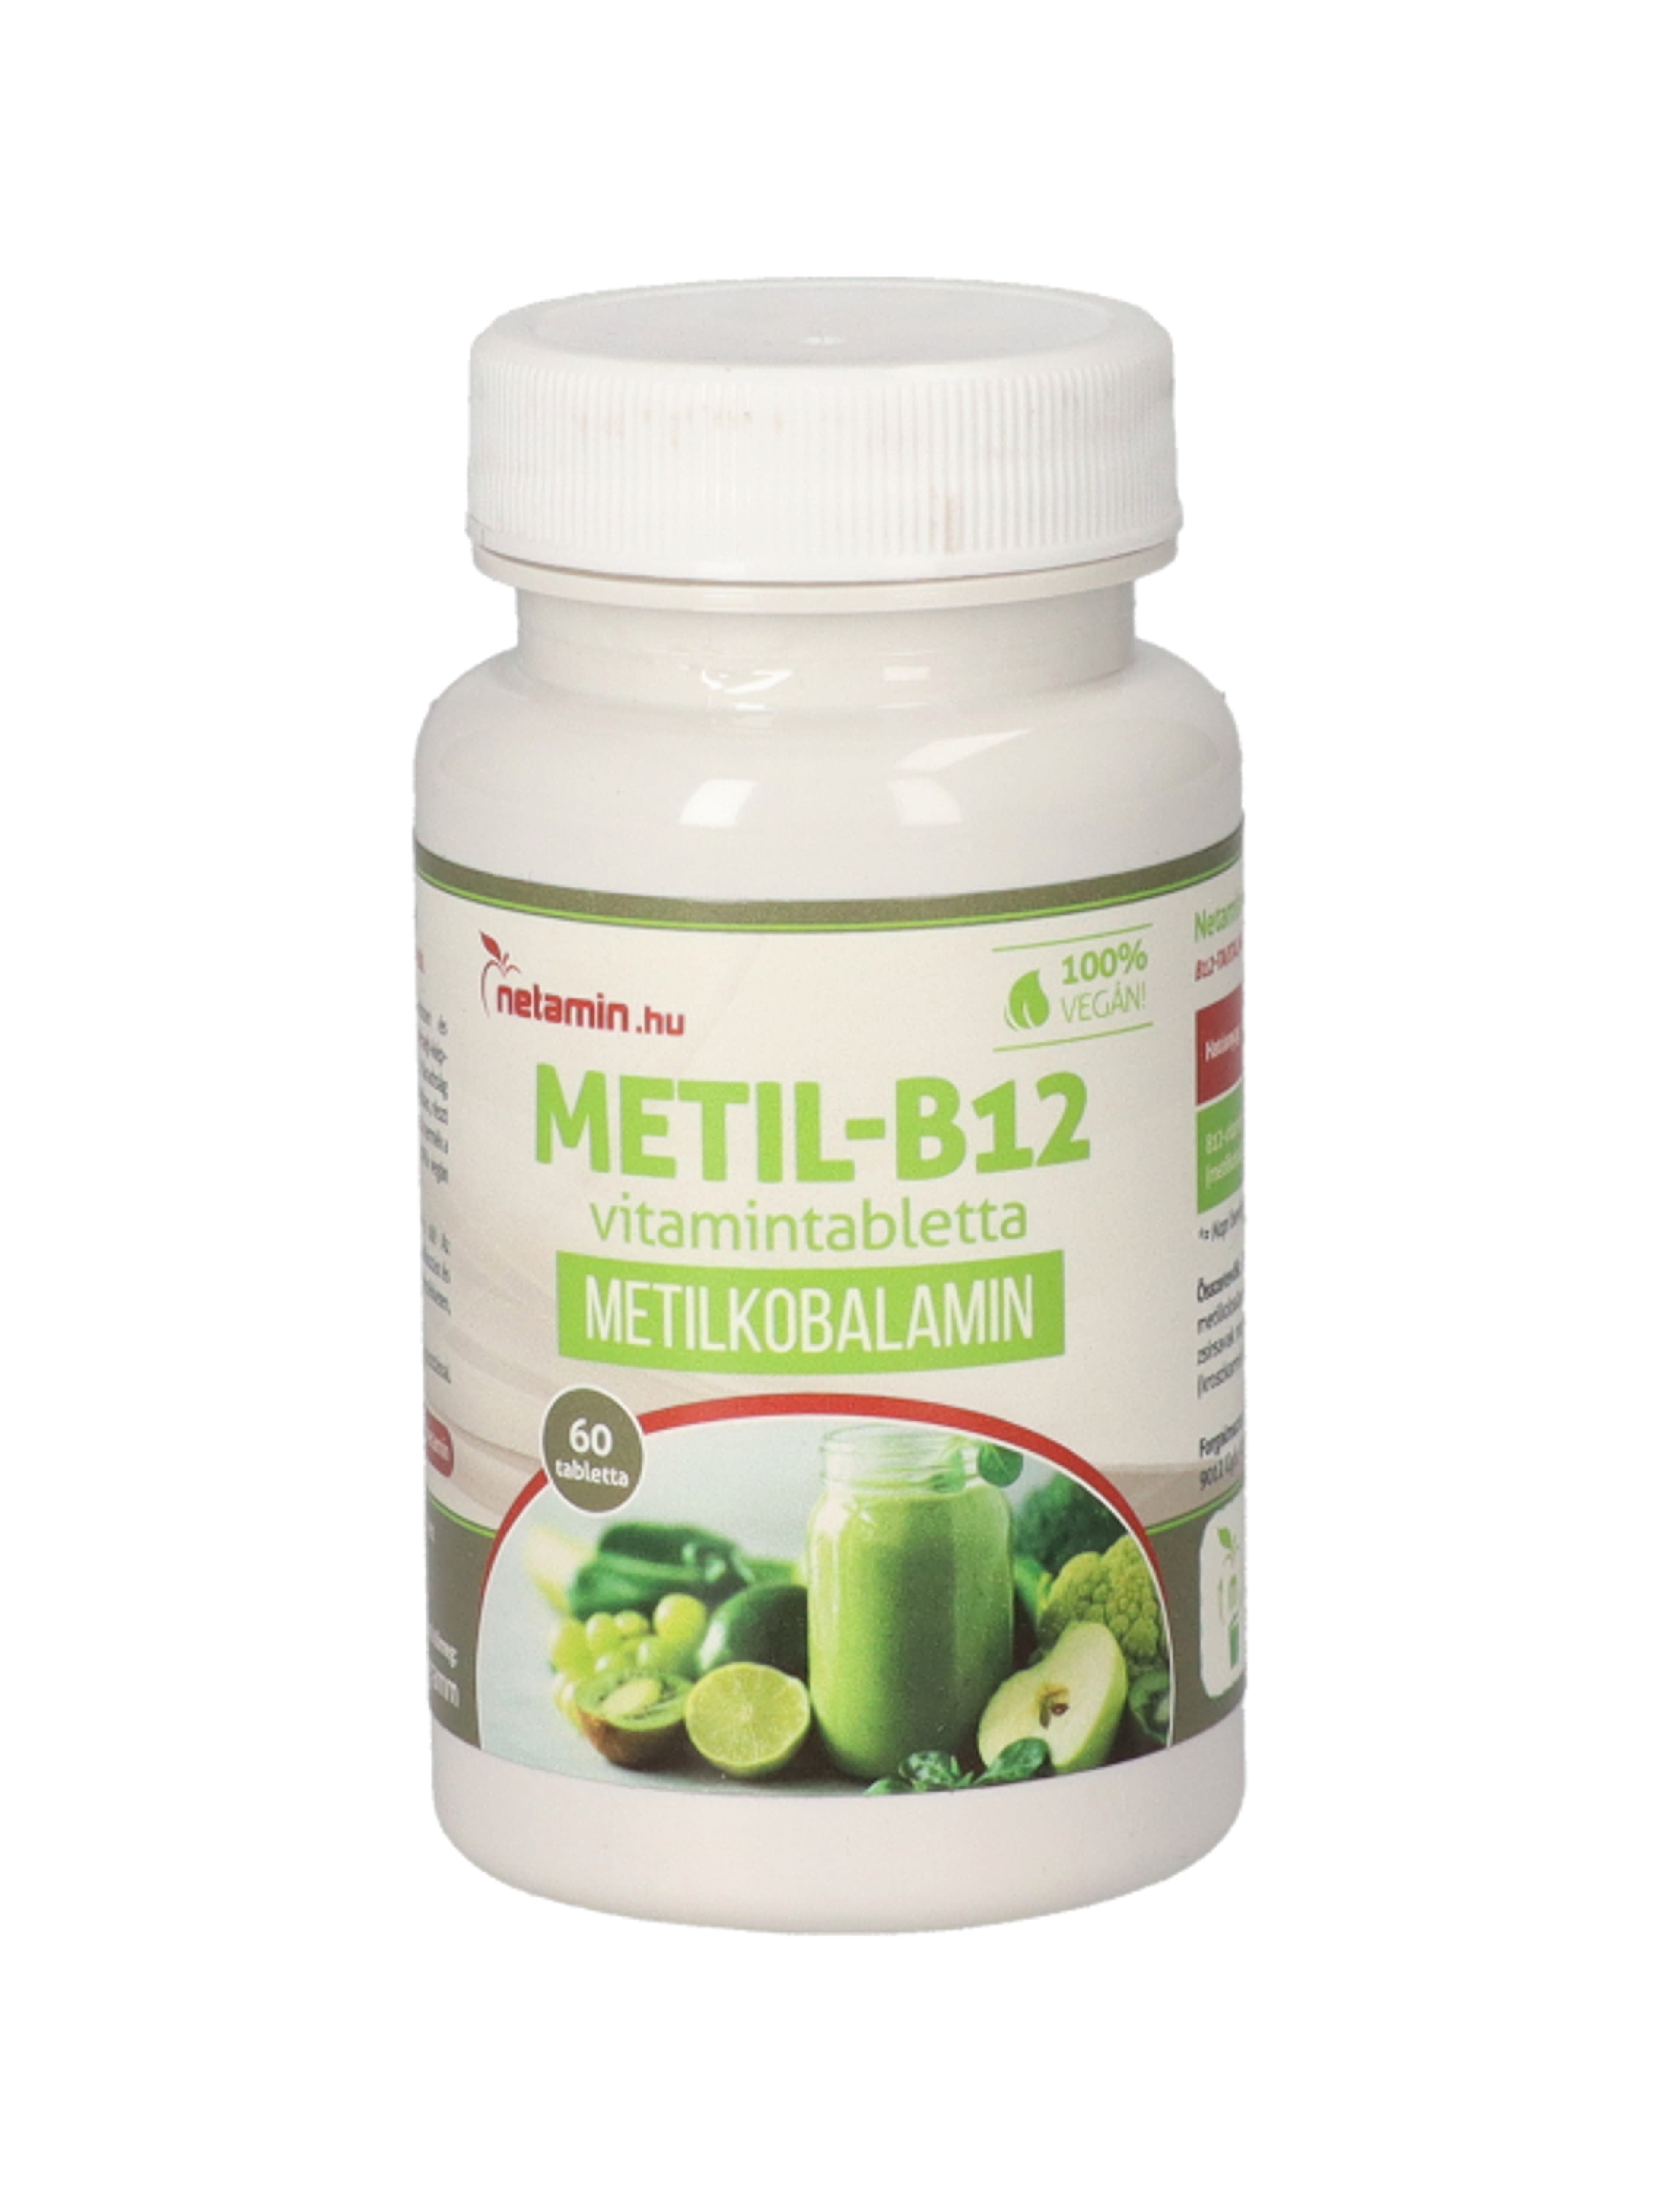 Netamin Metil-B12- vitamin tabletta - 60 db